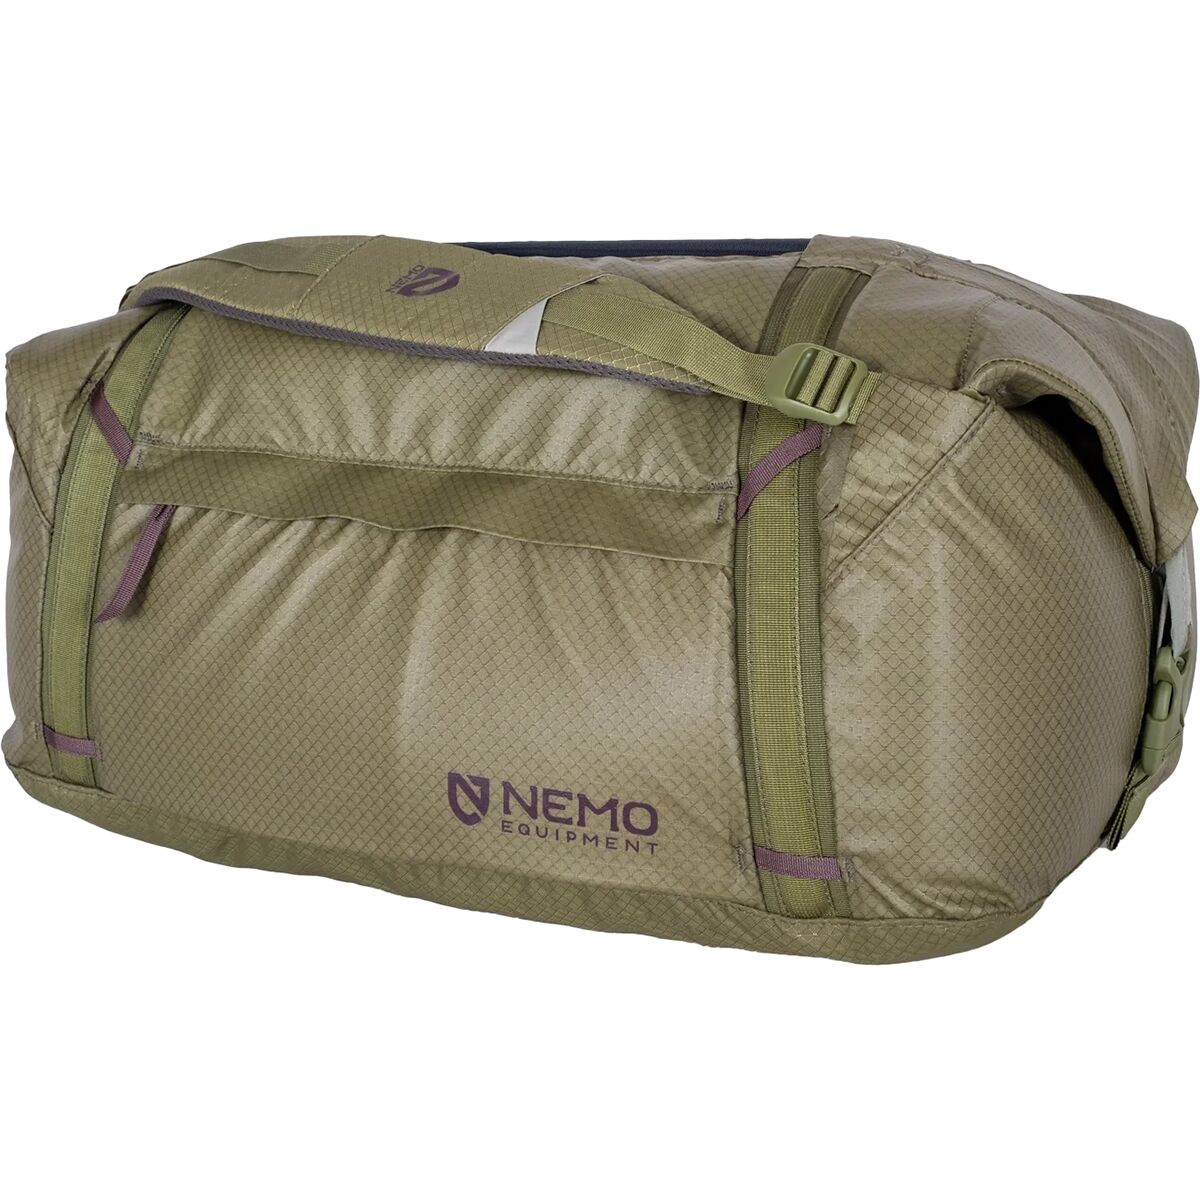 Двойная трансформируемая спортивная сумка объемом 55 л Nemo Equipment Inc., цвет nova